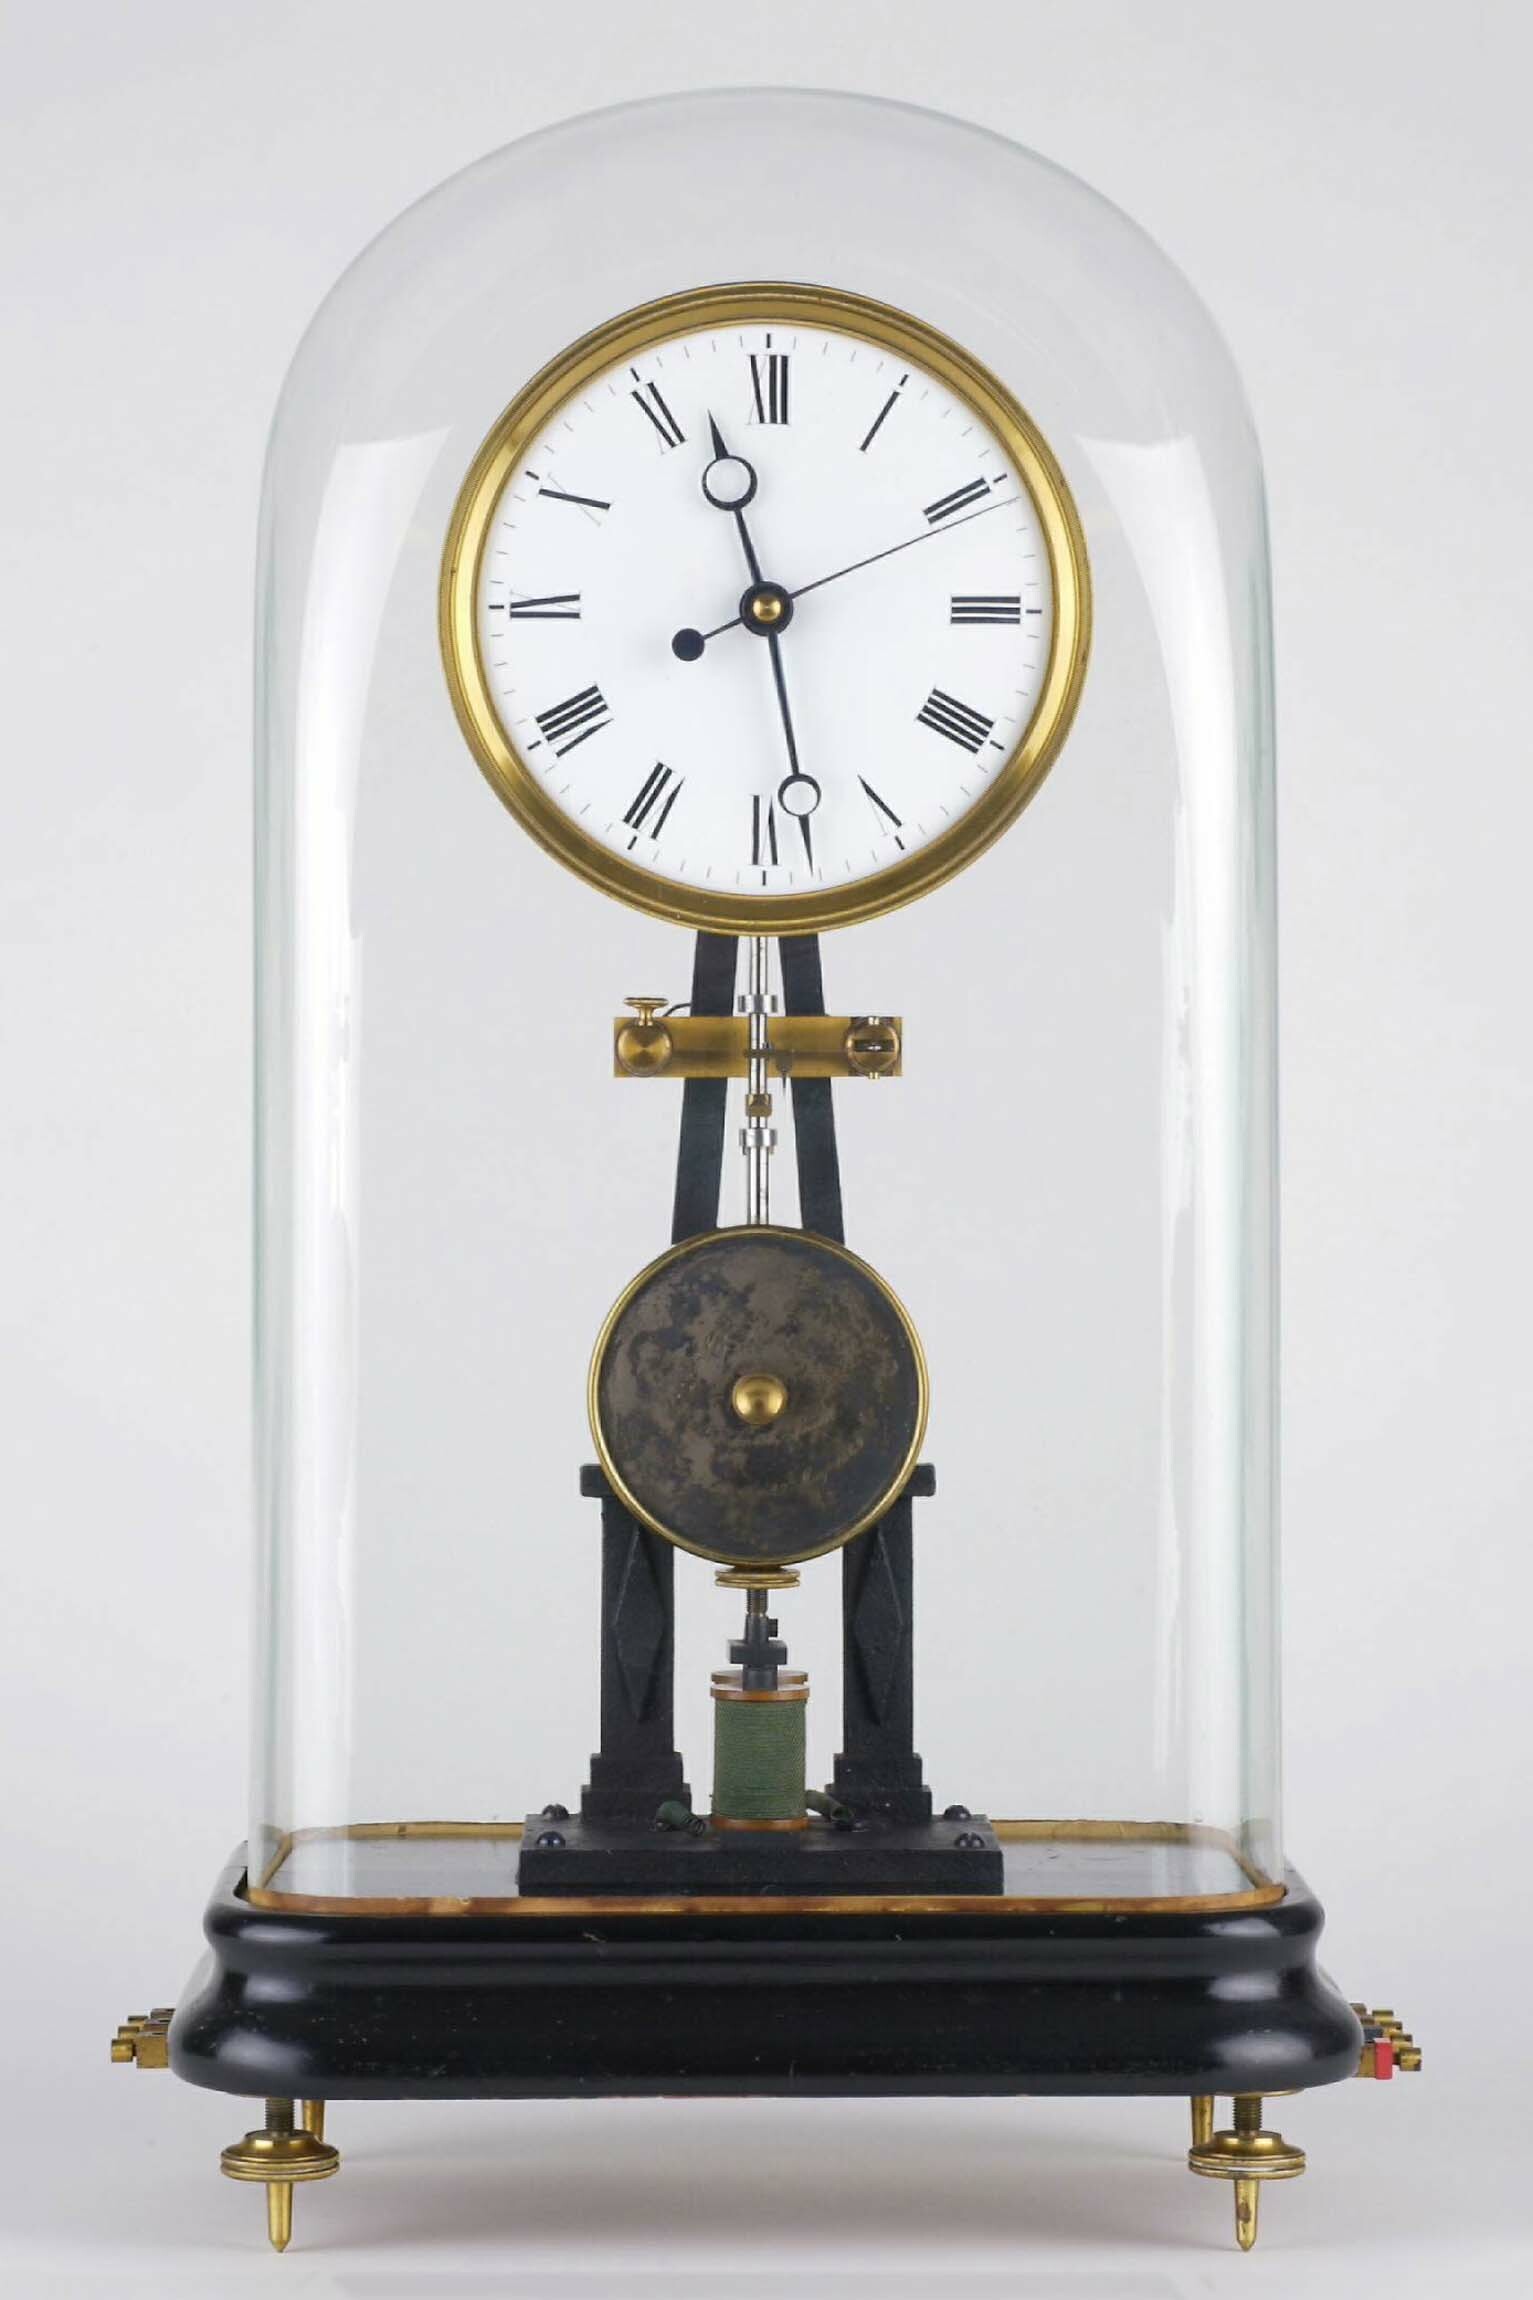 Tischuhr, Matthäus Hipp, Neuchâtel, um 1870 (Deutsches Uhrenmuseum CC BY-SA)